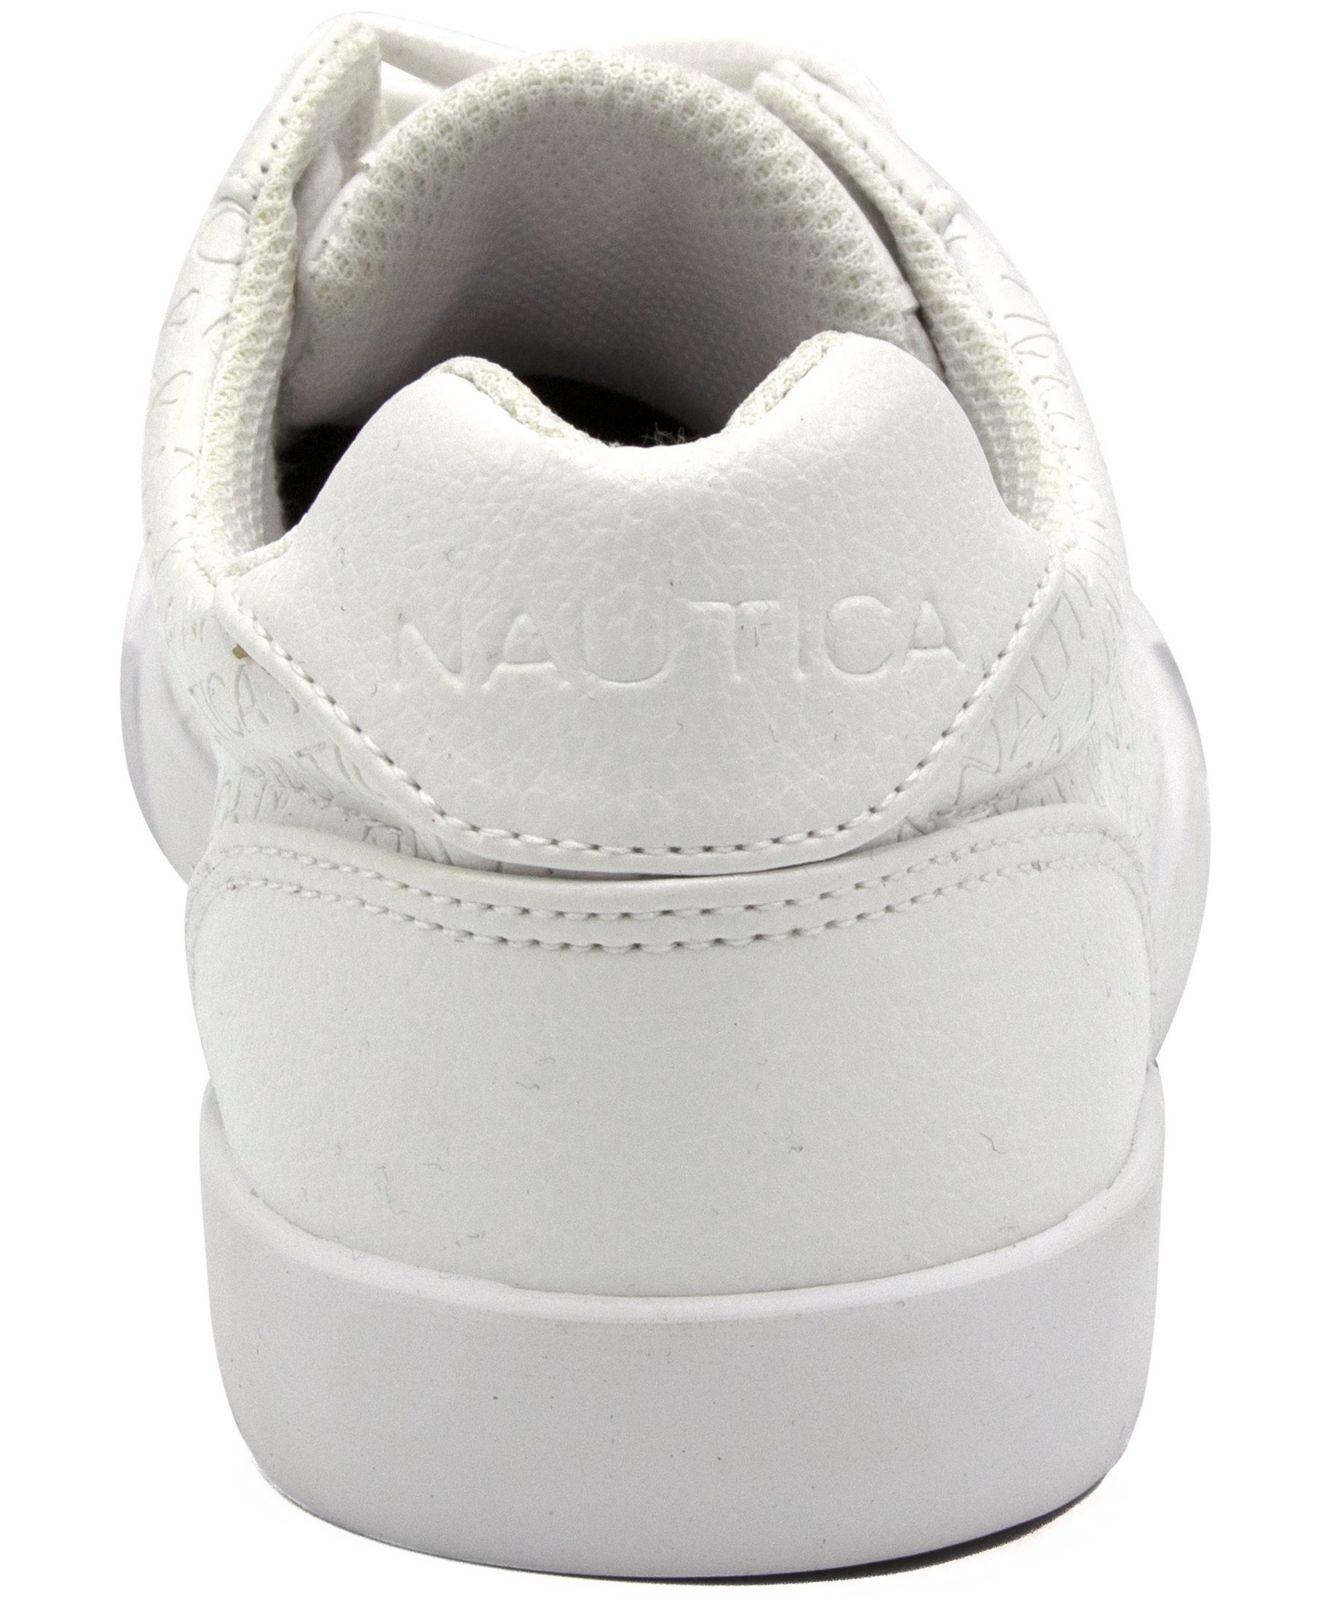 nautica white sneakers